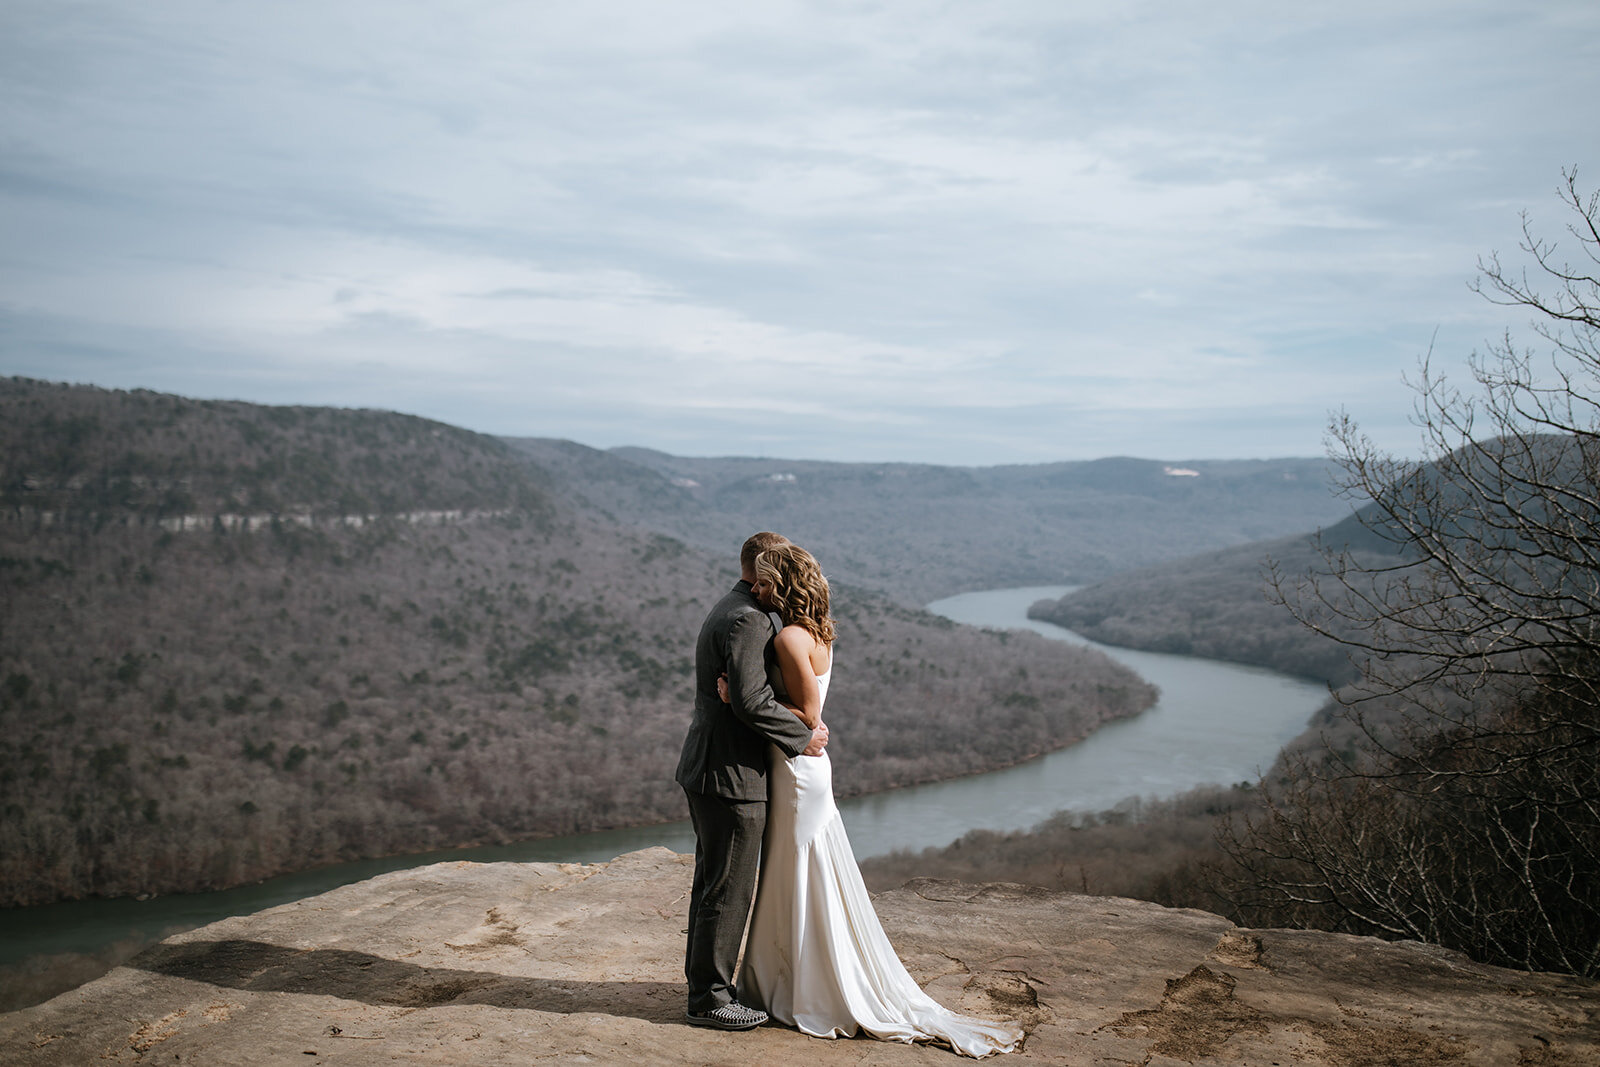 snoopers-rock-adventure-elopement-chattanooga-wedding-photographerfoster-falls-elopement-chattanooga-wedding-photographer-413_websize.jpg